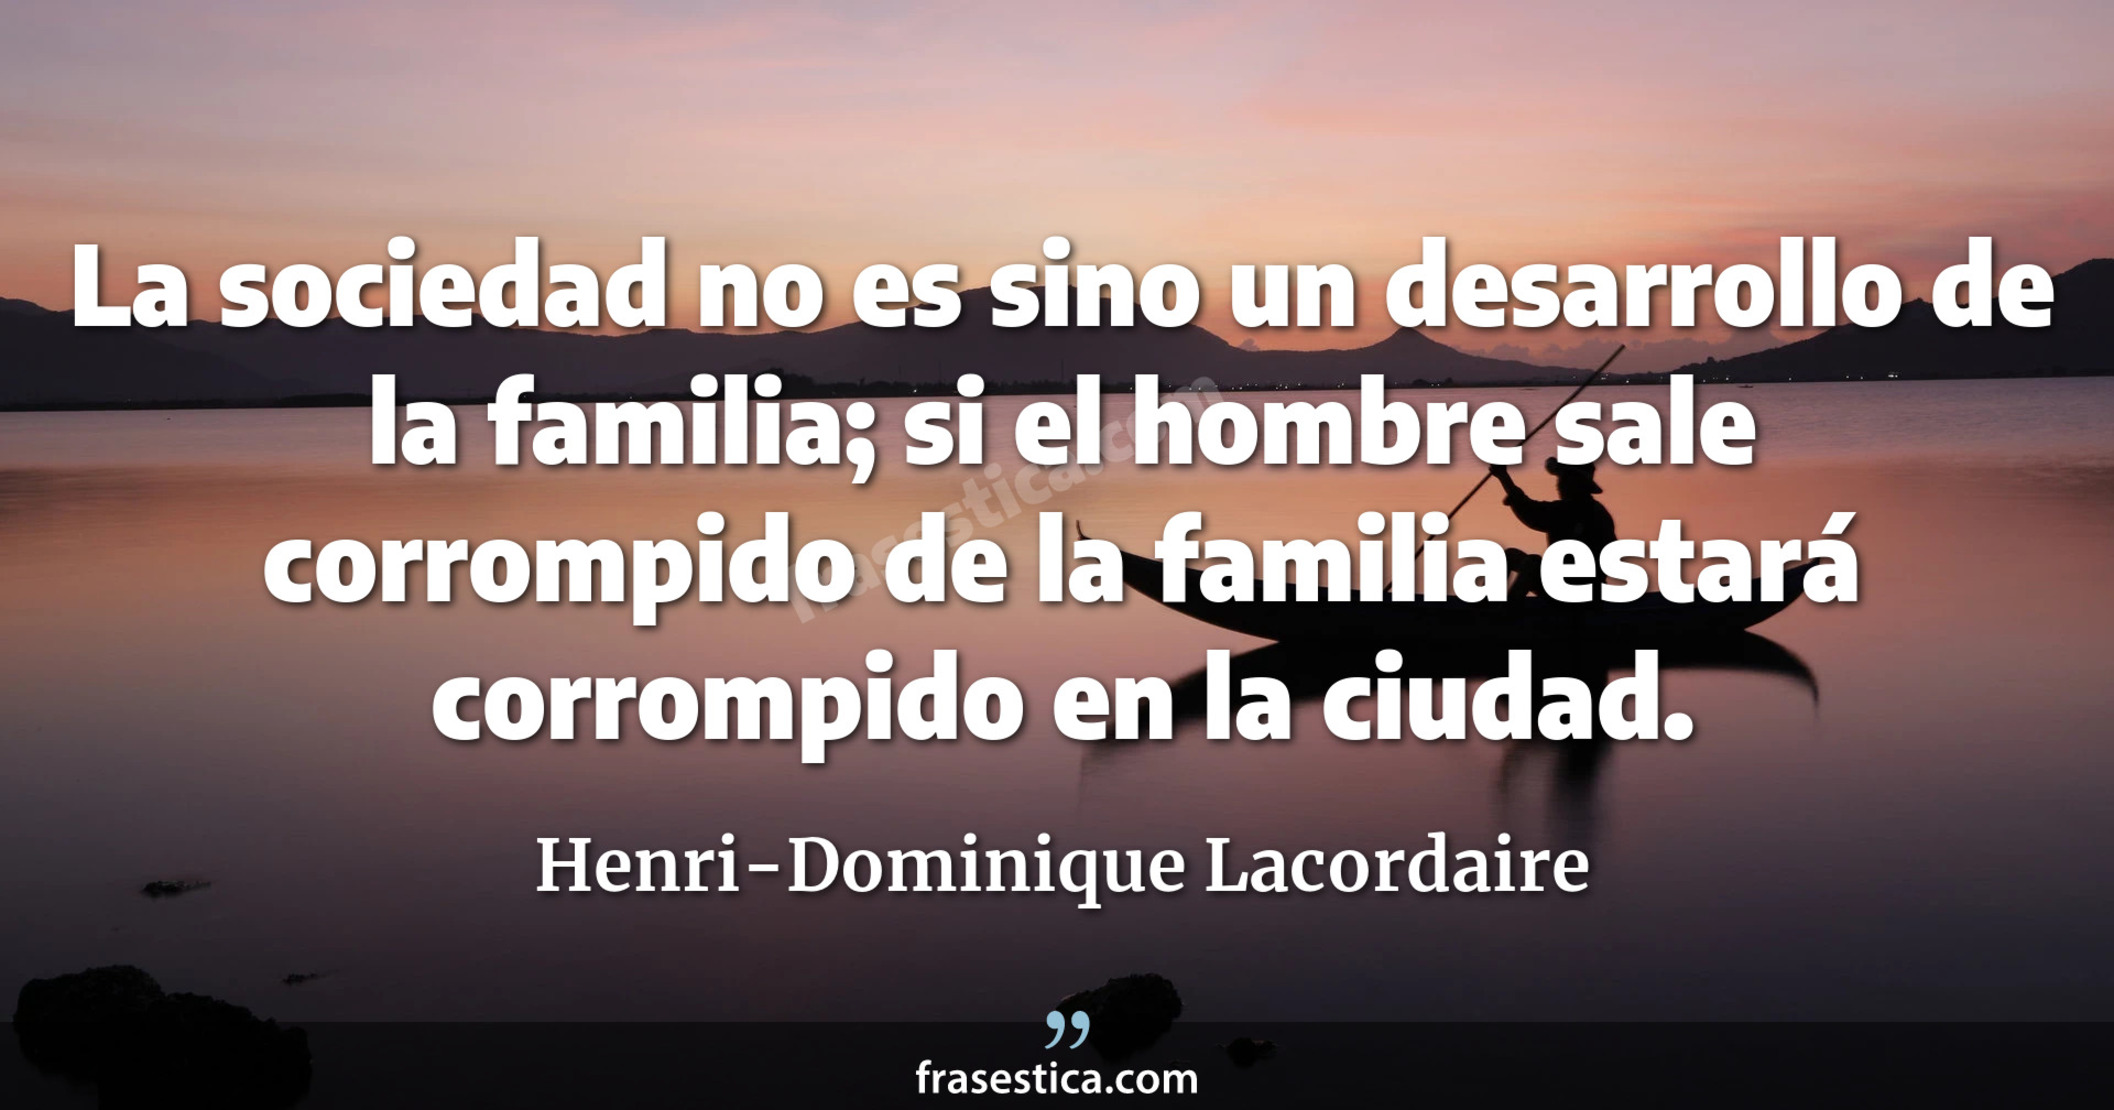 La sociedad no es sino un desarrollo de la familia; si el hombre sale corrompido de la familia estará corrompido en la ciudad. - Henri-Dominique Lacordaire